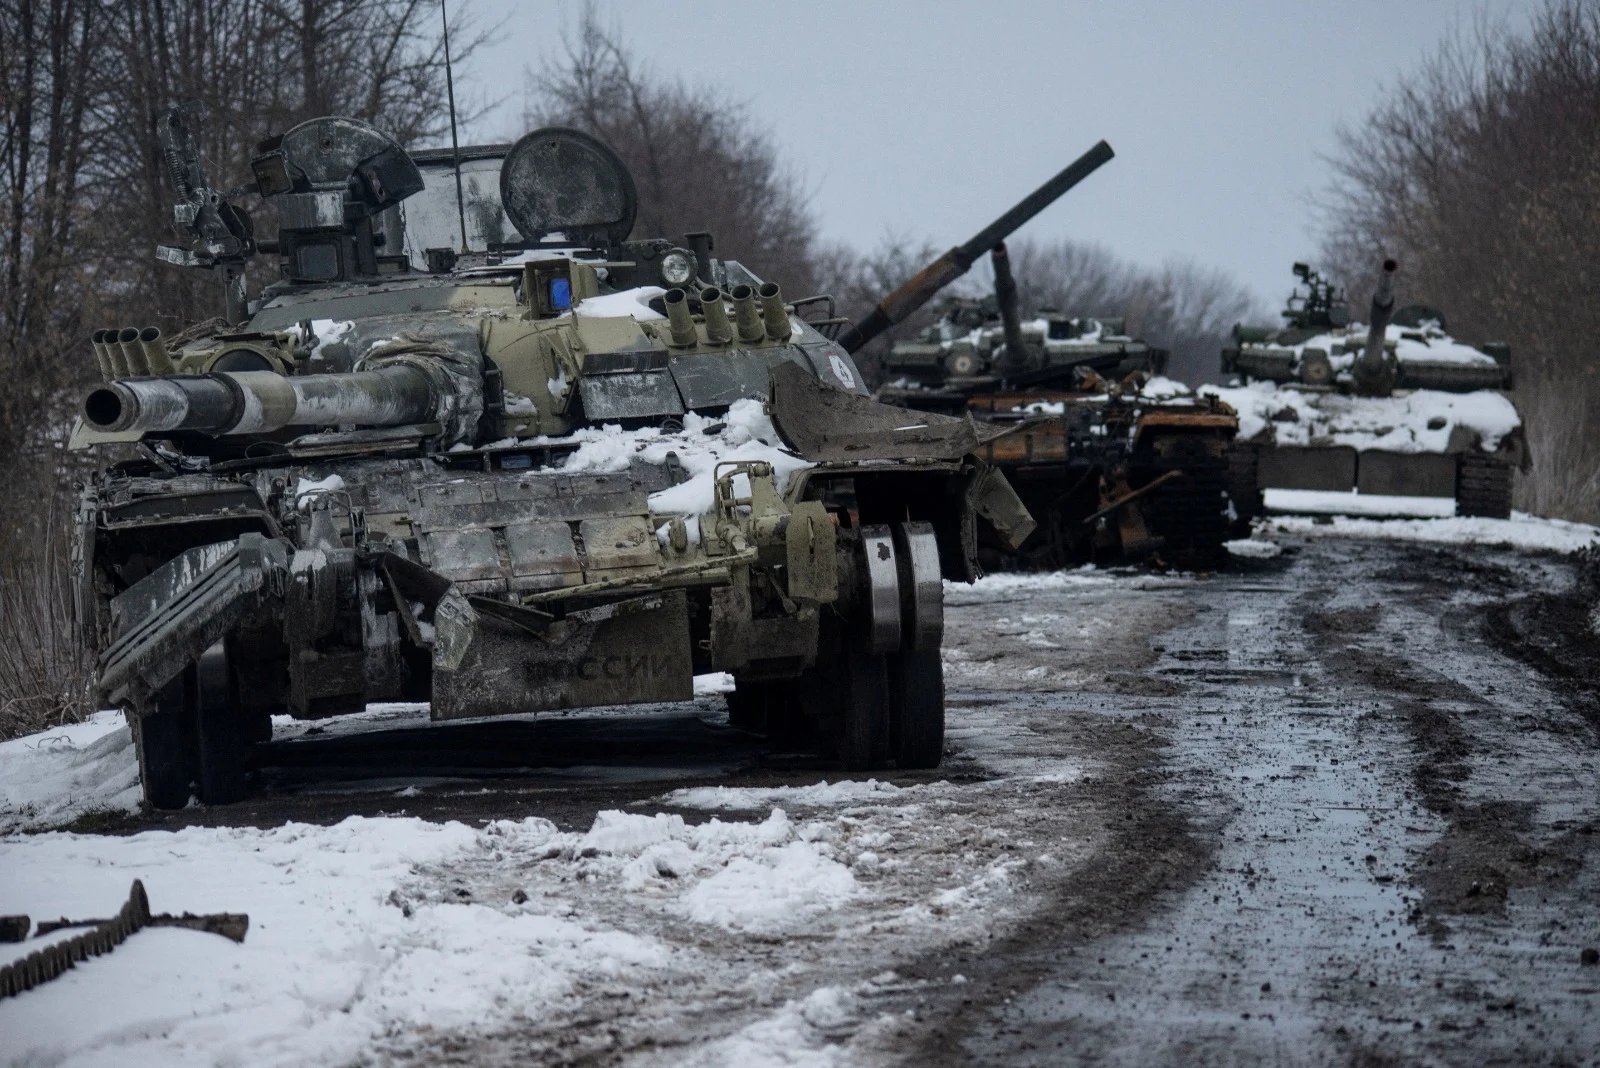 שיירת טנקים רוסיים שהושמדו